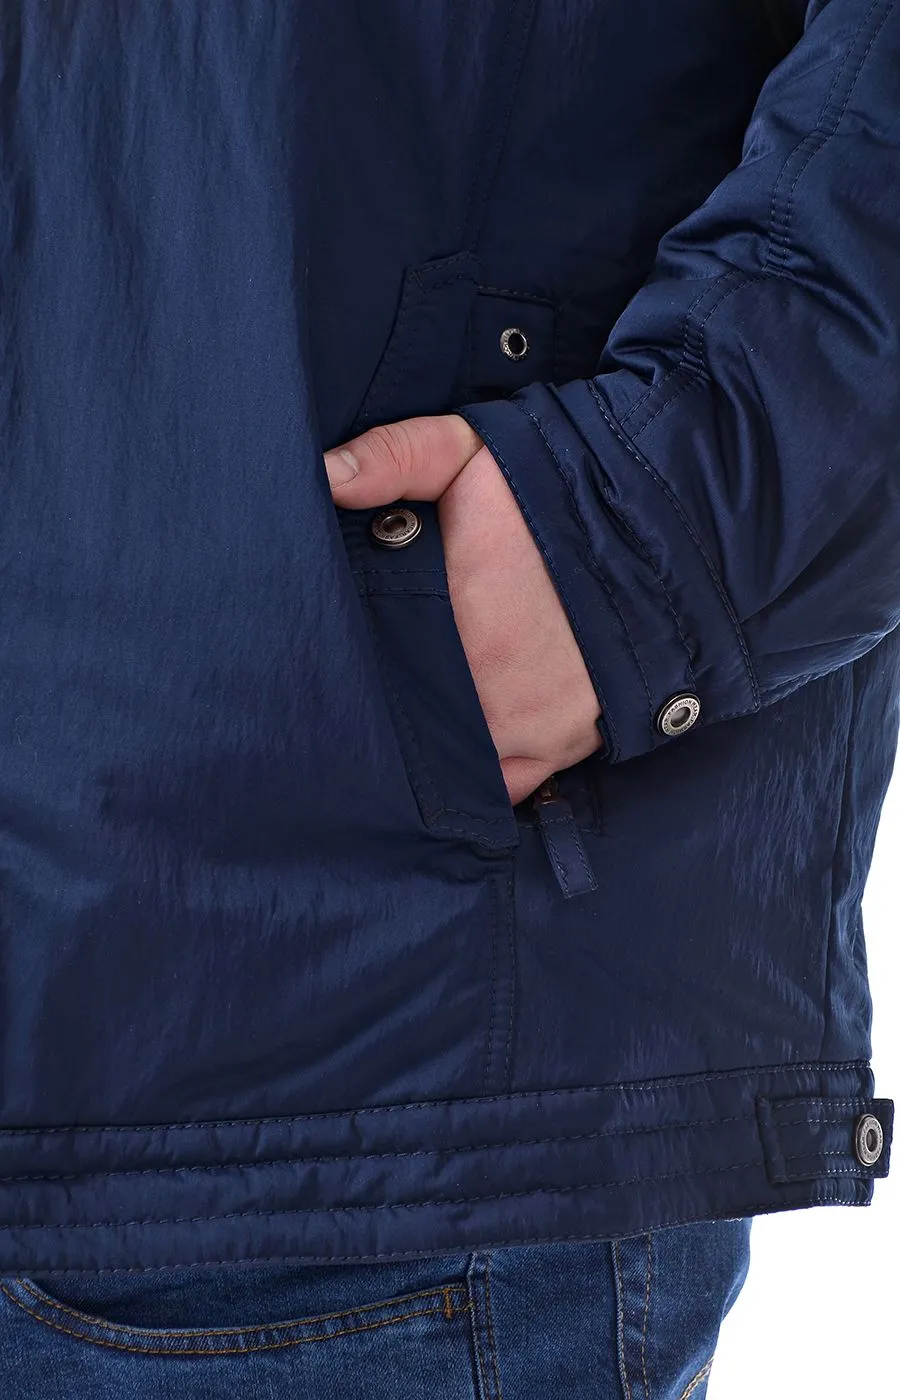 Куртка Премьер синяя большого размера